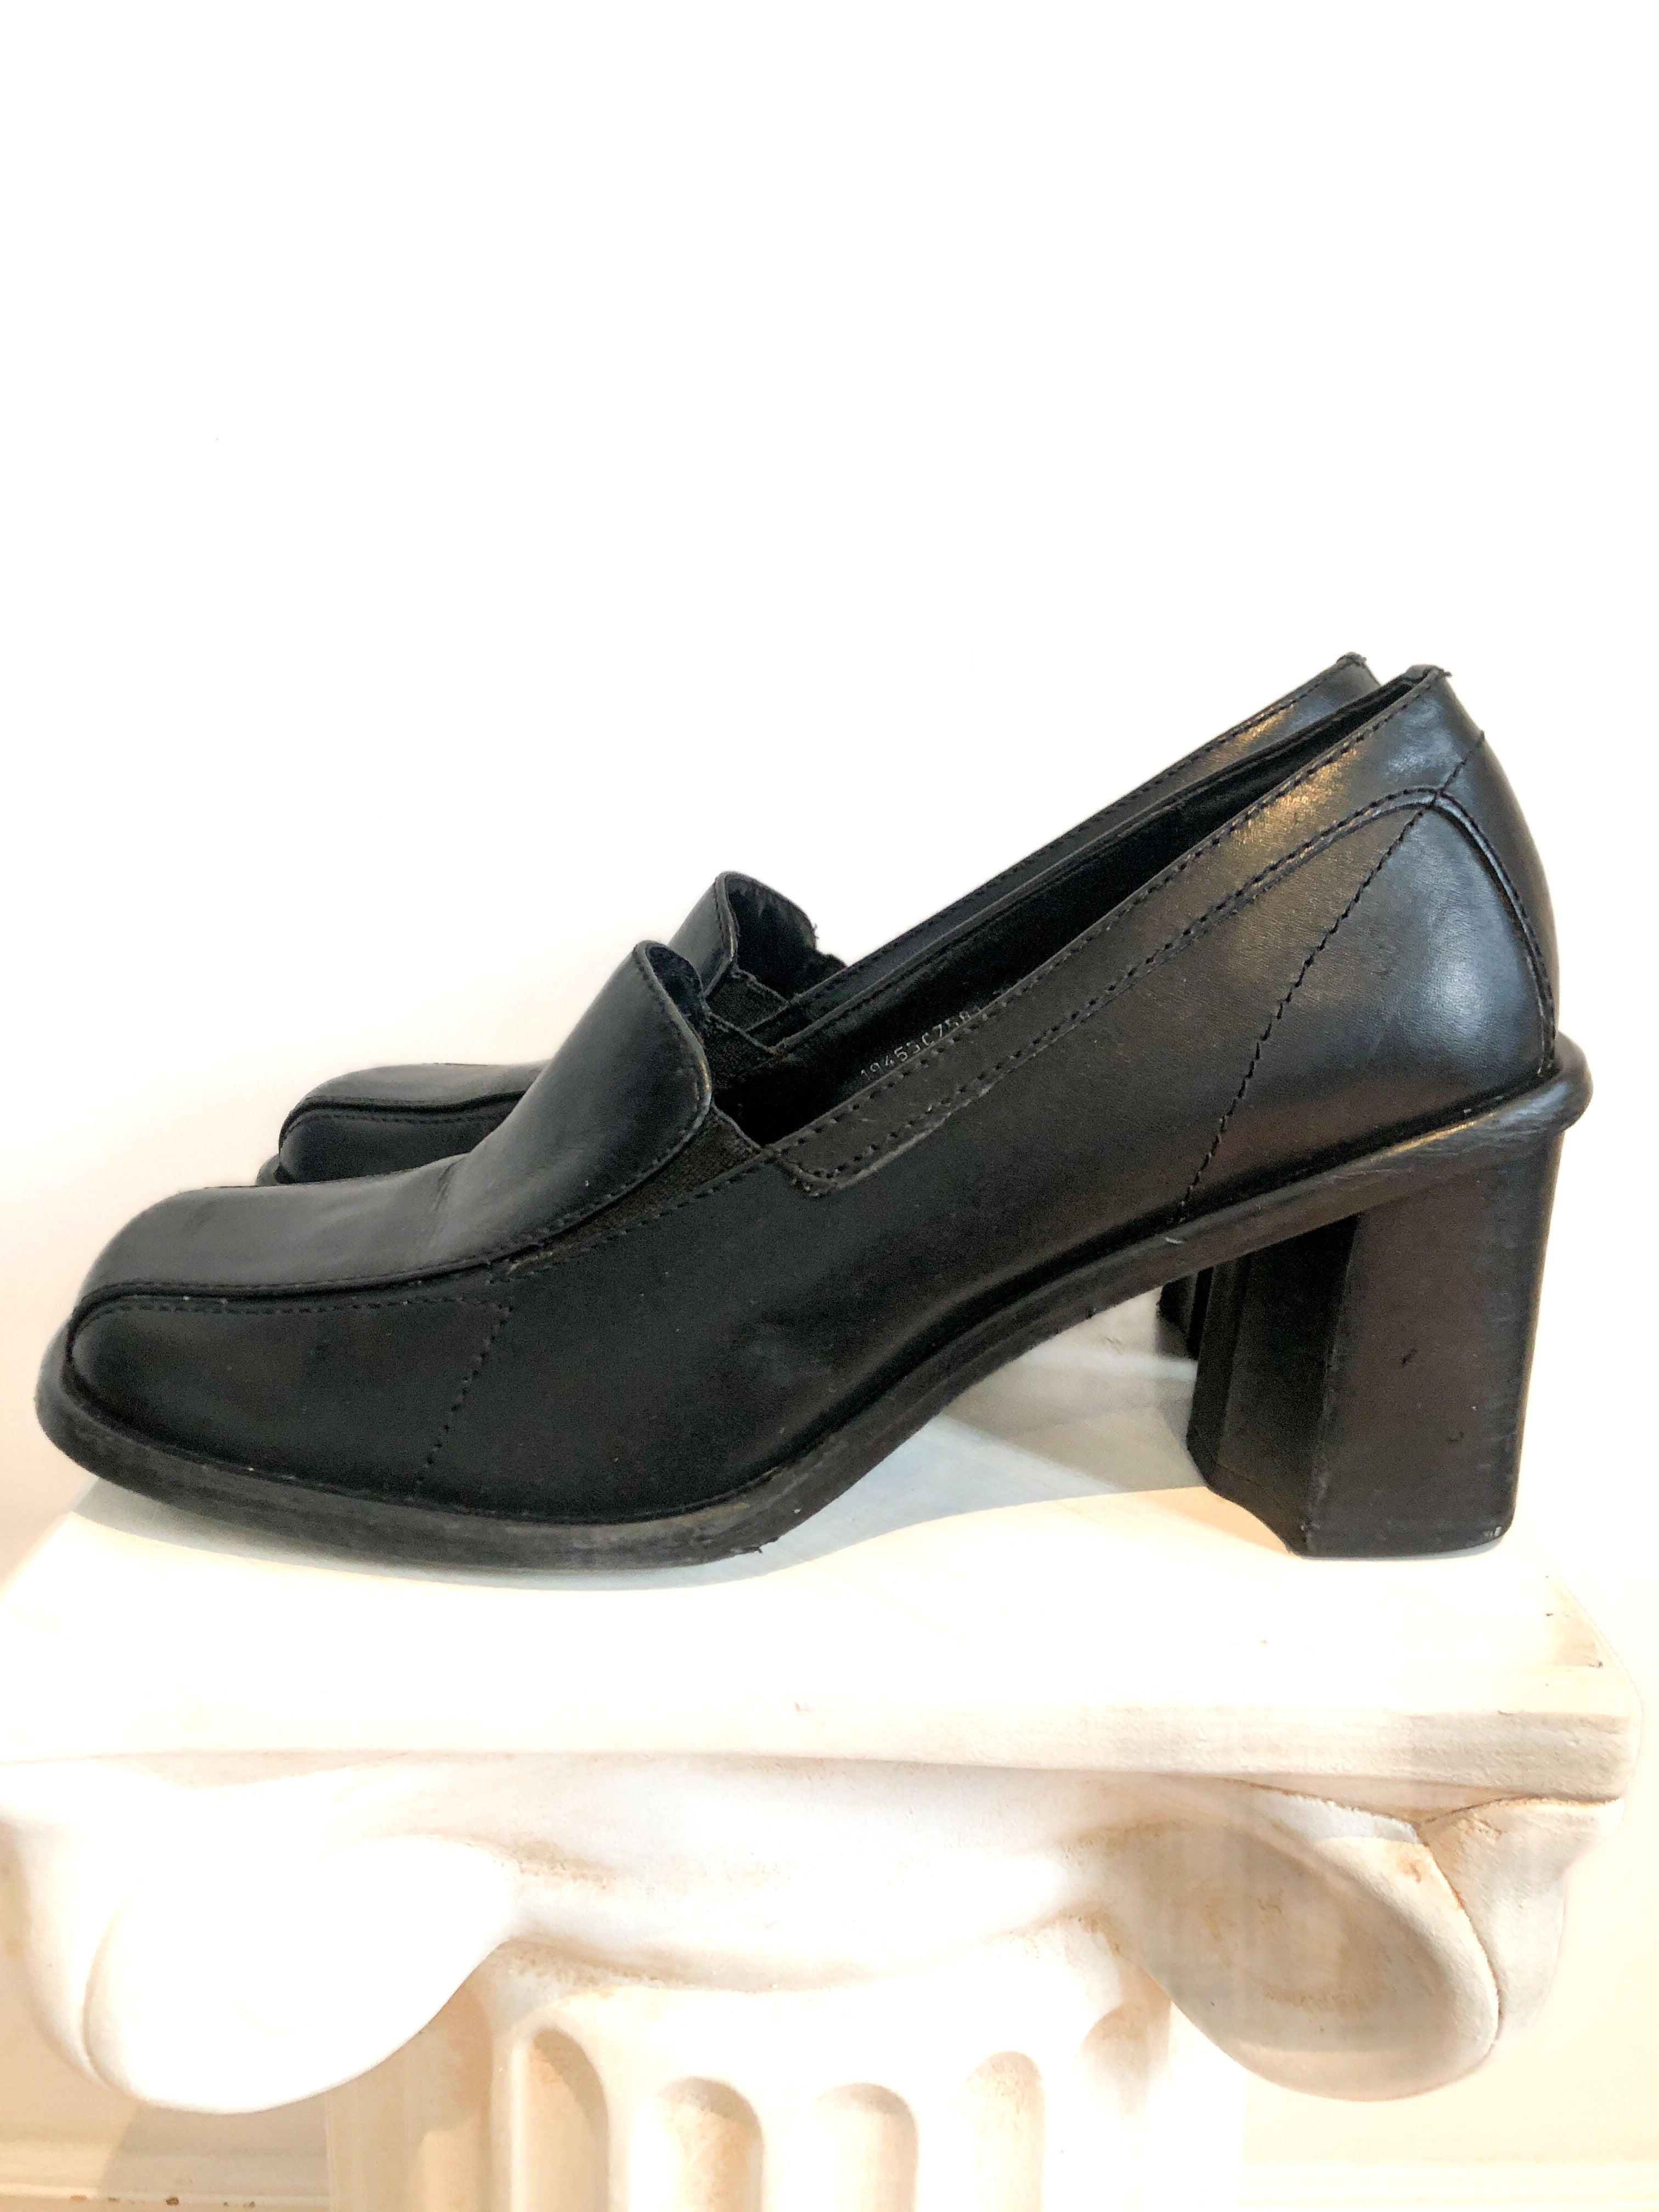 Black Loafer Chunky Heel Shoe, US Size 7 Women's, Vintag – Covet Vintage